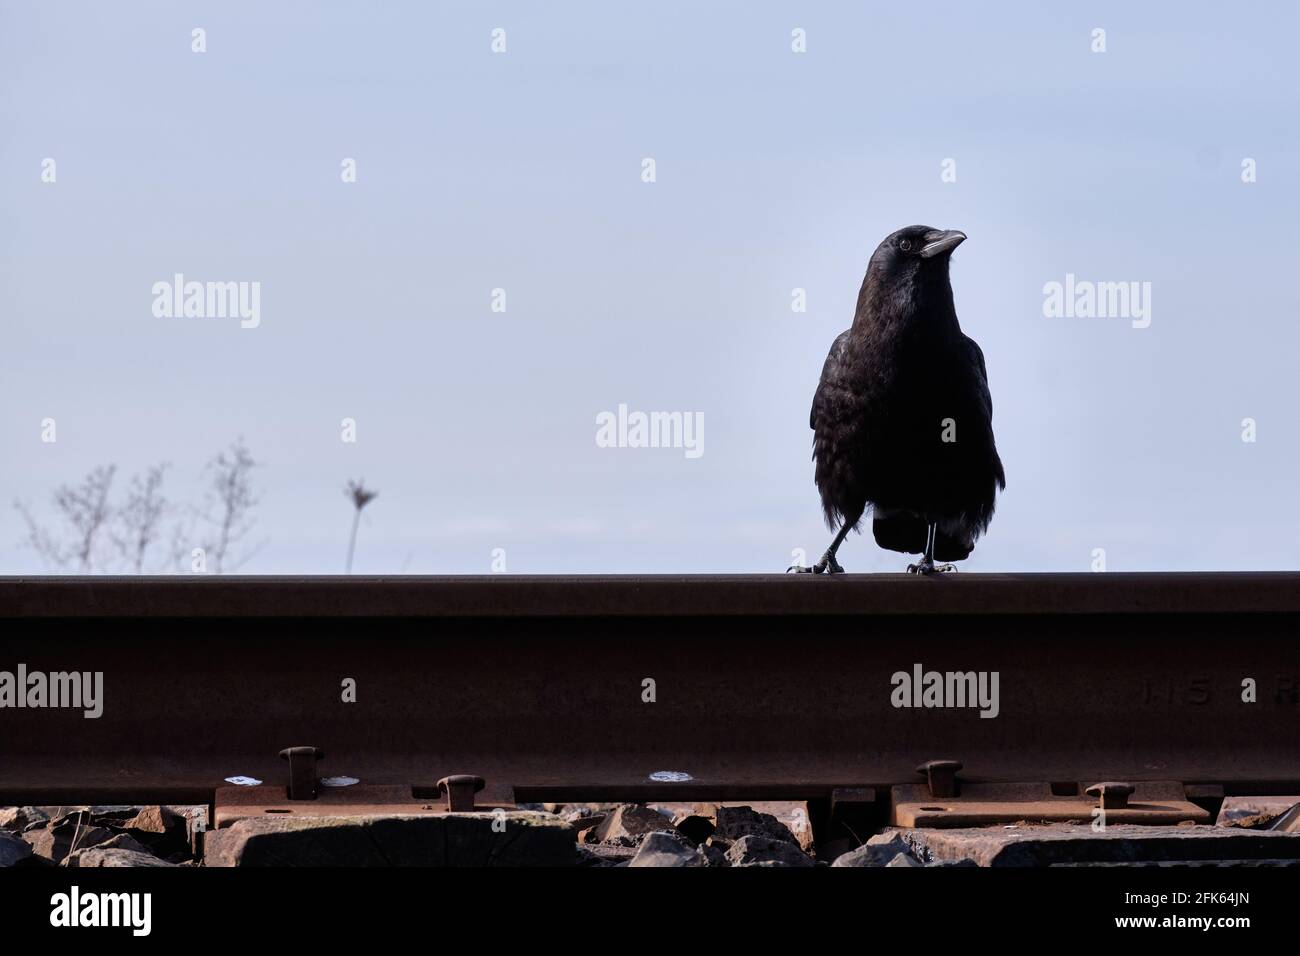 Un regard alerte sur le photographe est capturé par le dessous. Crow se trouve sur une cravate de chemin de fer et est presque silhouetté sur ciel bleu clair Banque D'Images